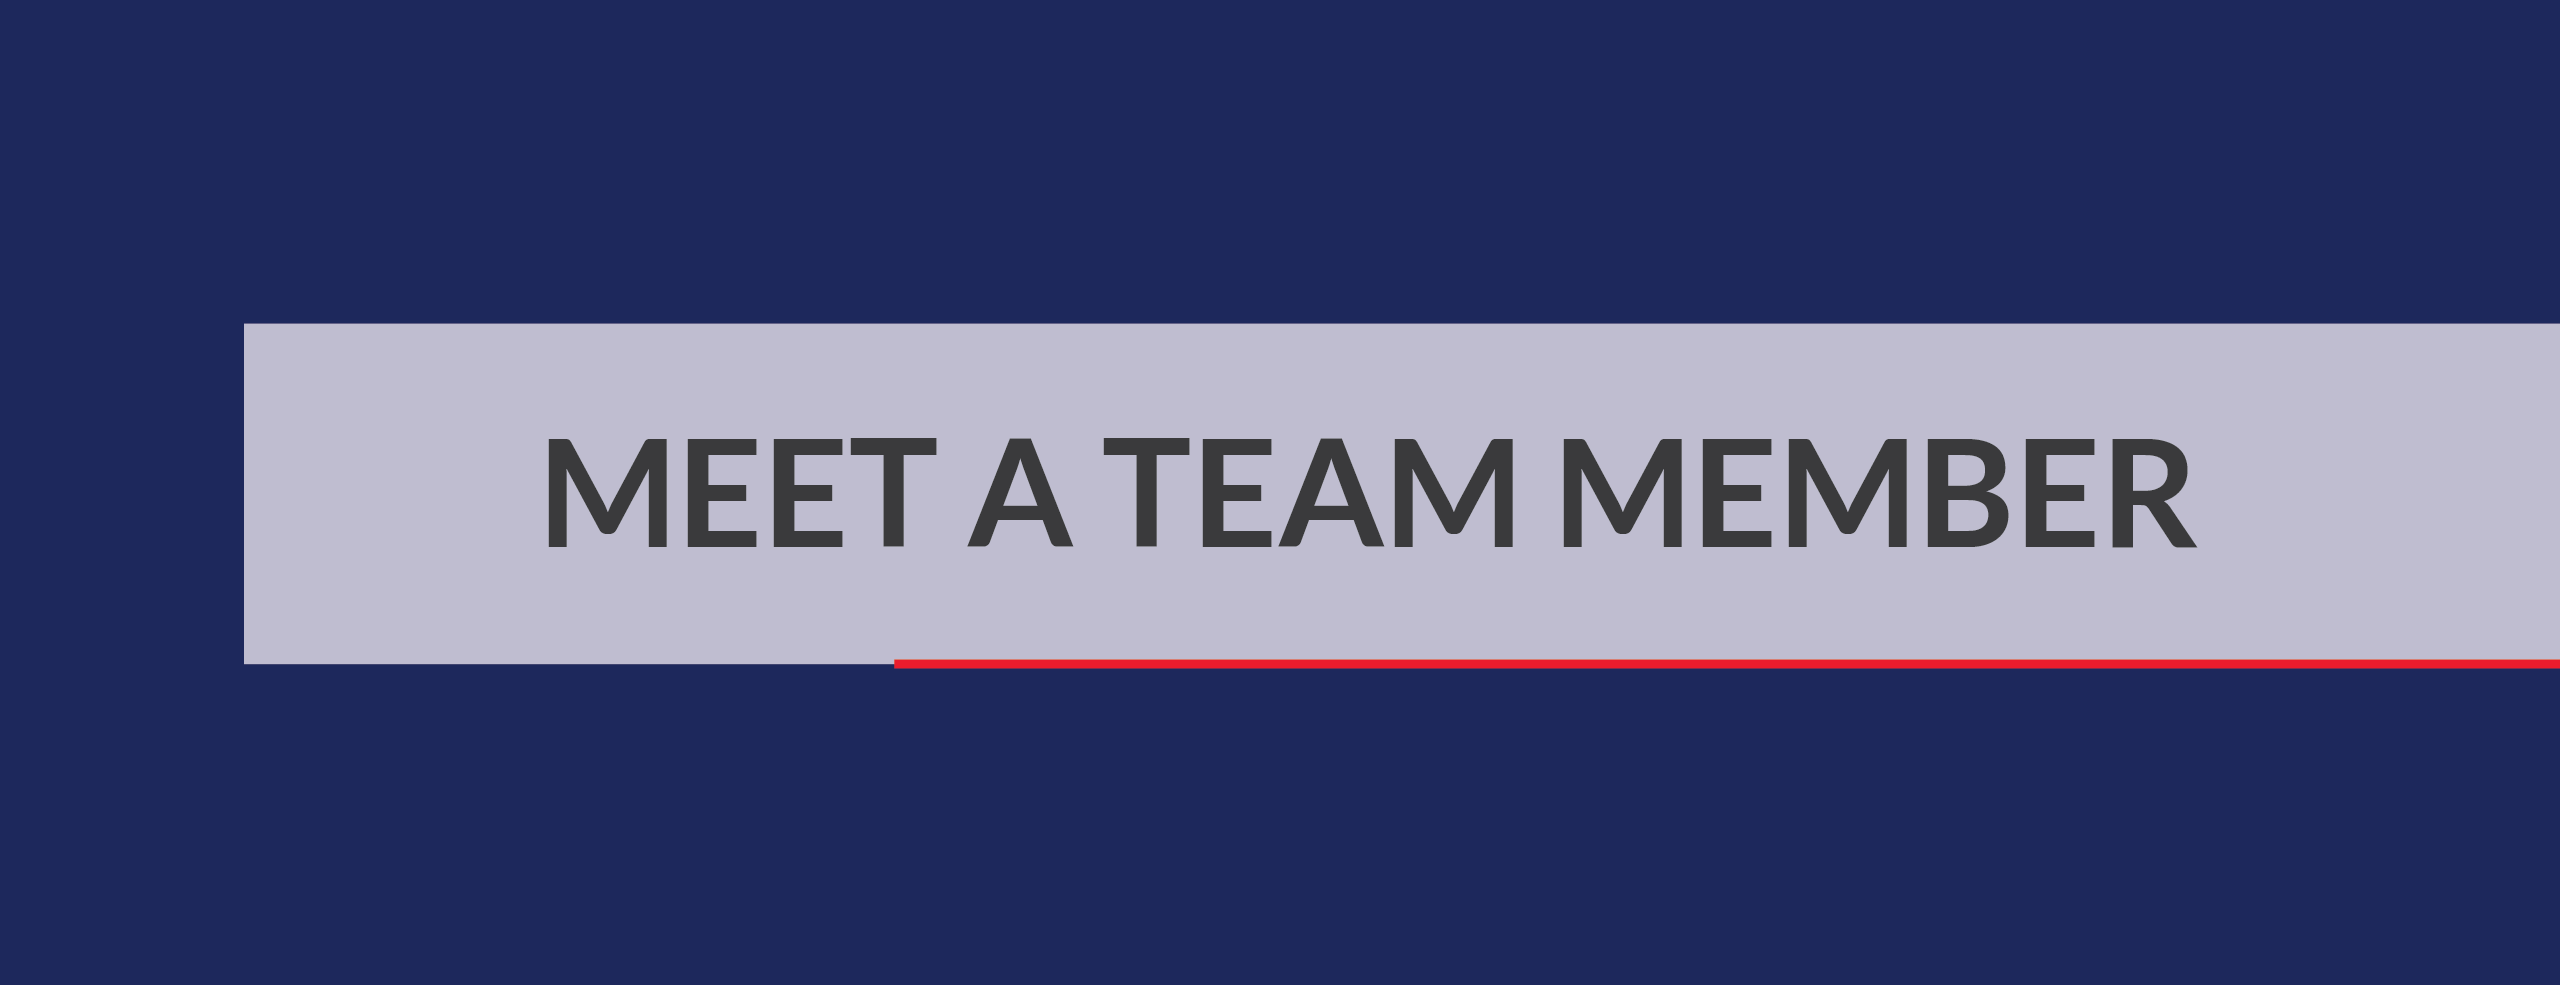 Meet a Team Member